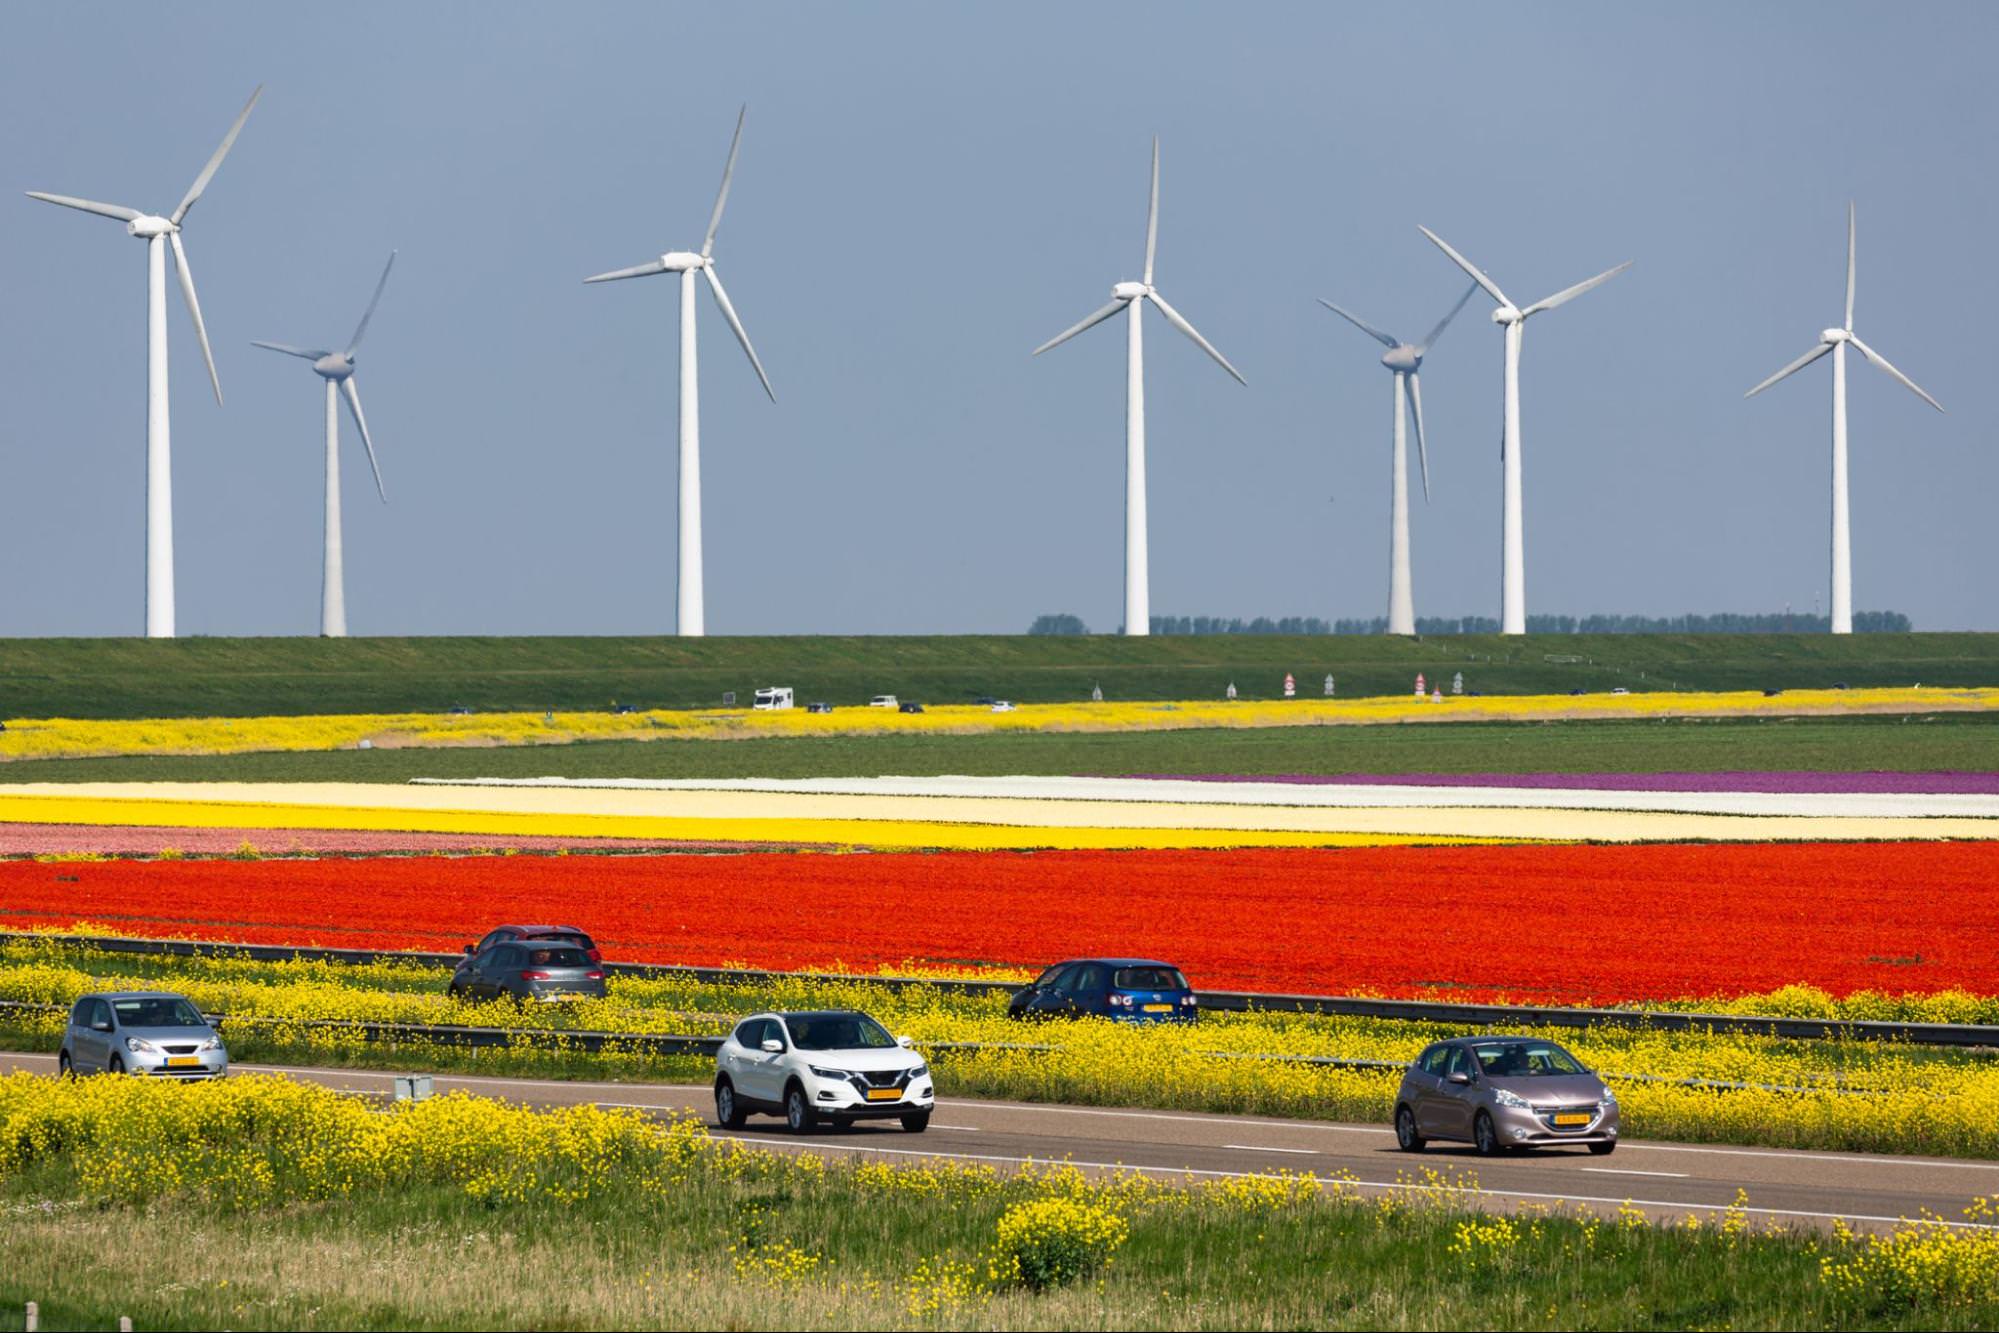 Красочный голландский пейзаж с полями красных, желтых и белых цветов на переднем плане. Несколько машин едут по дороге через поля.